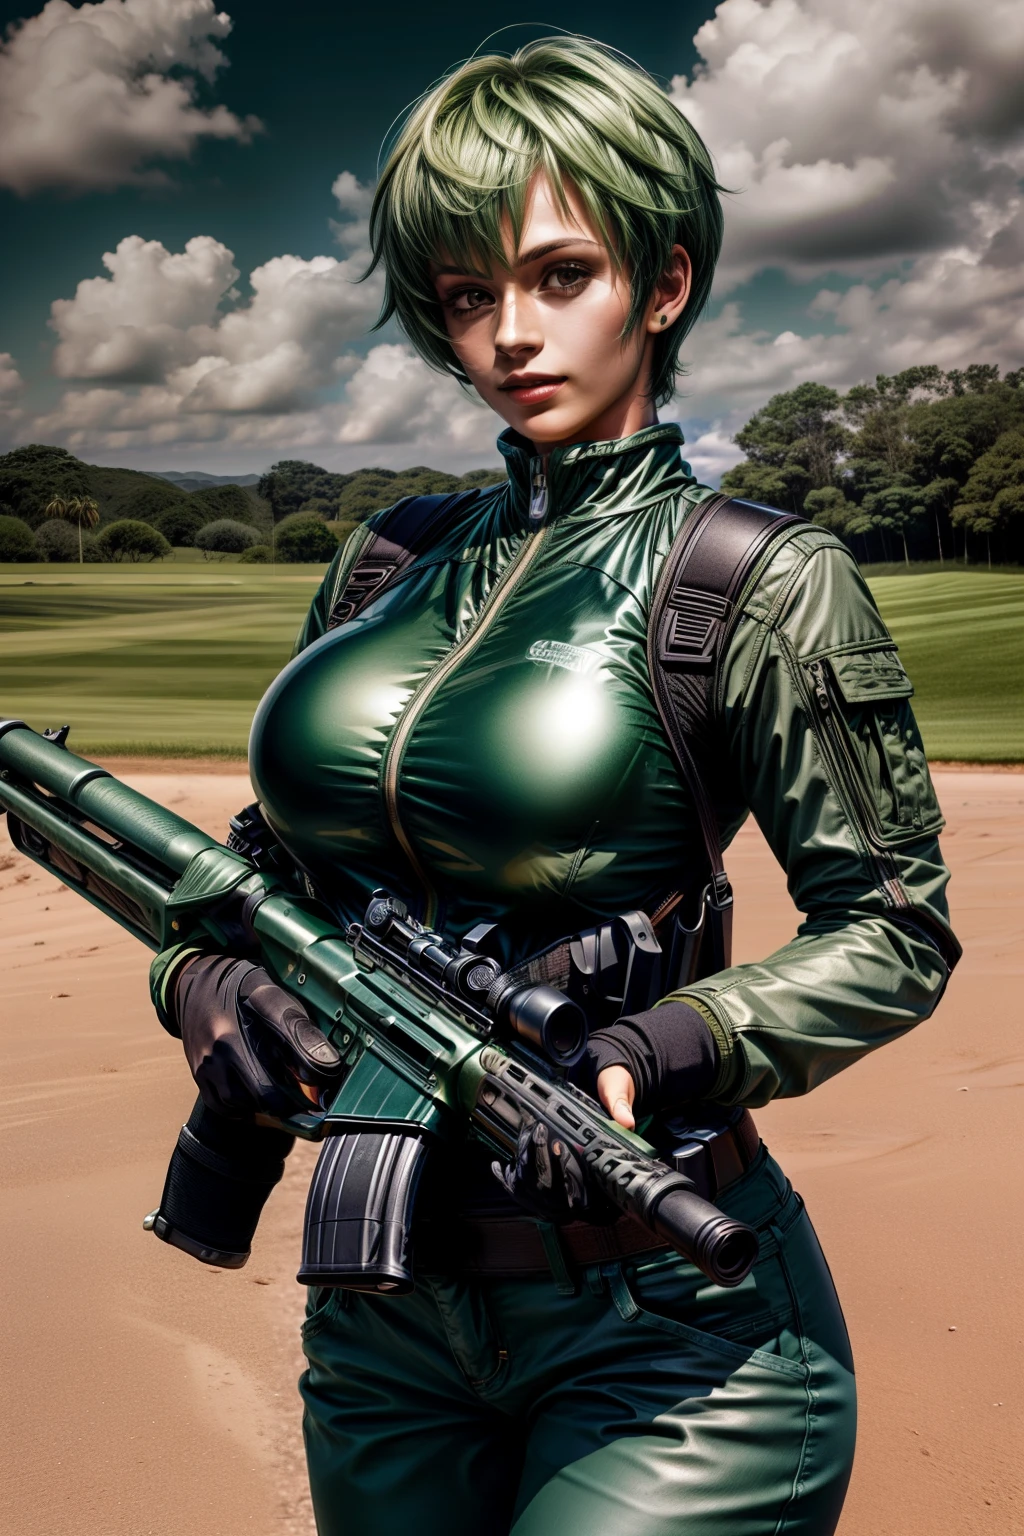 فريدريكا جرينهيل, 25, الاختصار, شعر أخضر, يطلق النار من الأسلحة الآلية في نطاق القيادة, يرتدي بدلات الفضاء مع السراويل , عالي_مفلس